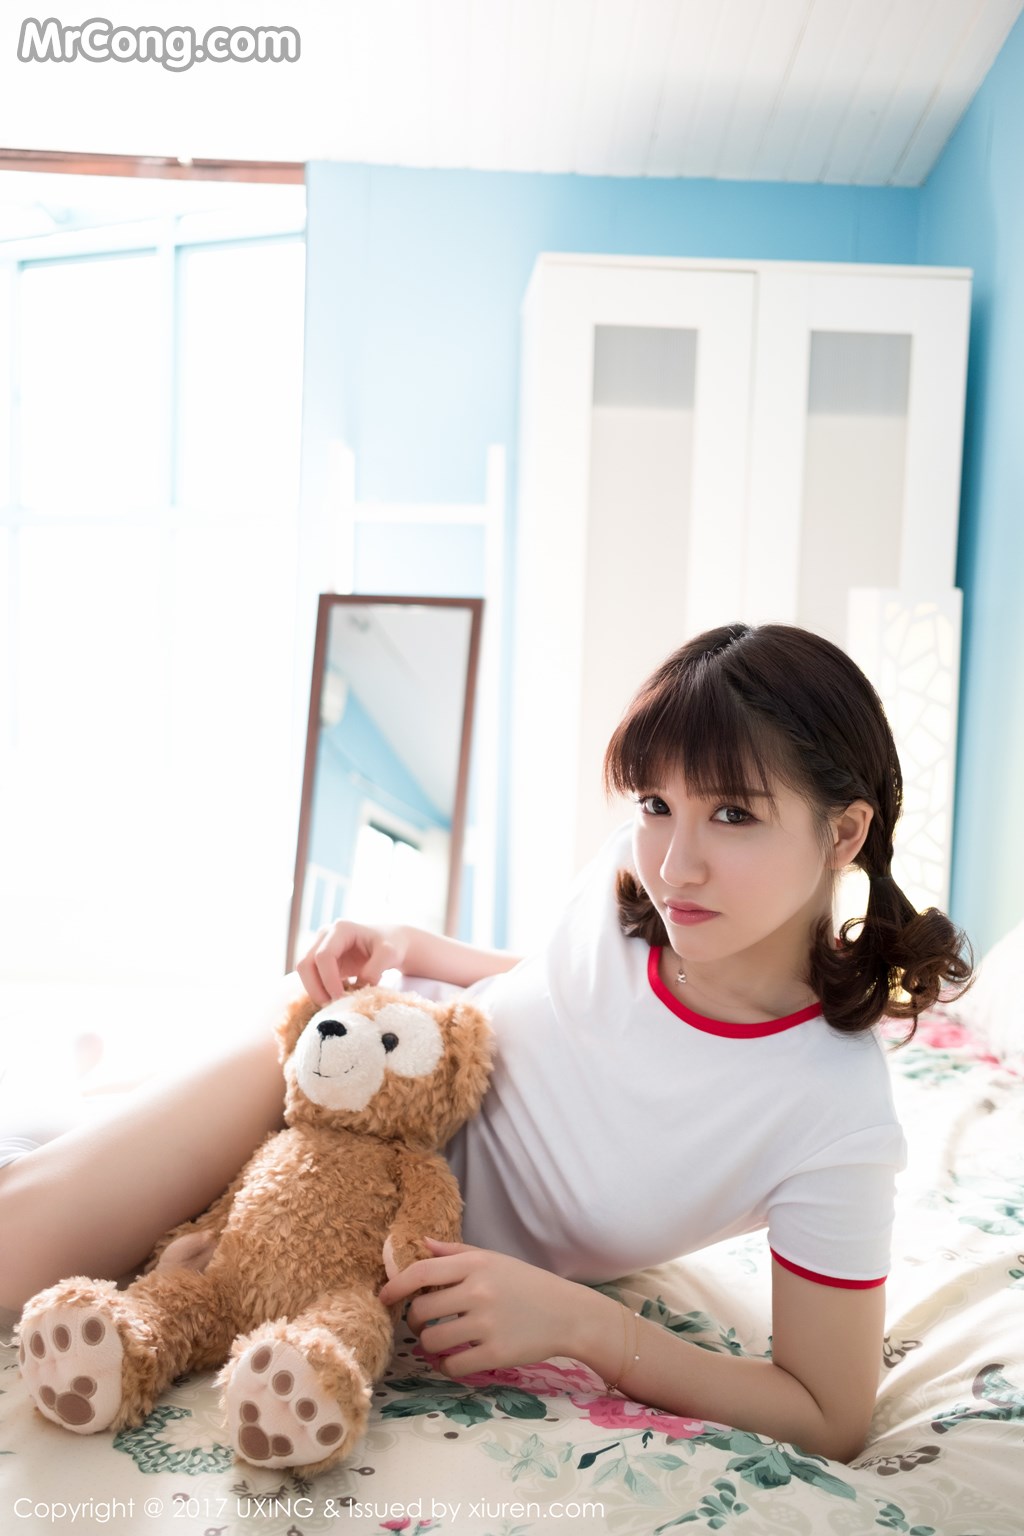 UXING Vol.040: Model Aojiao Meng Meng (K8 傲 娇 萌萌 Vivian) (61 photos) photo 2-9